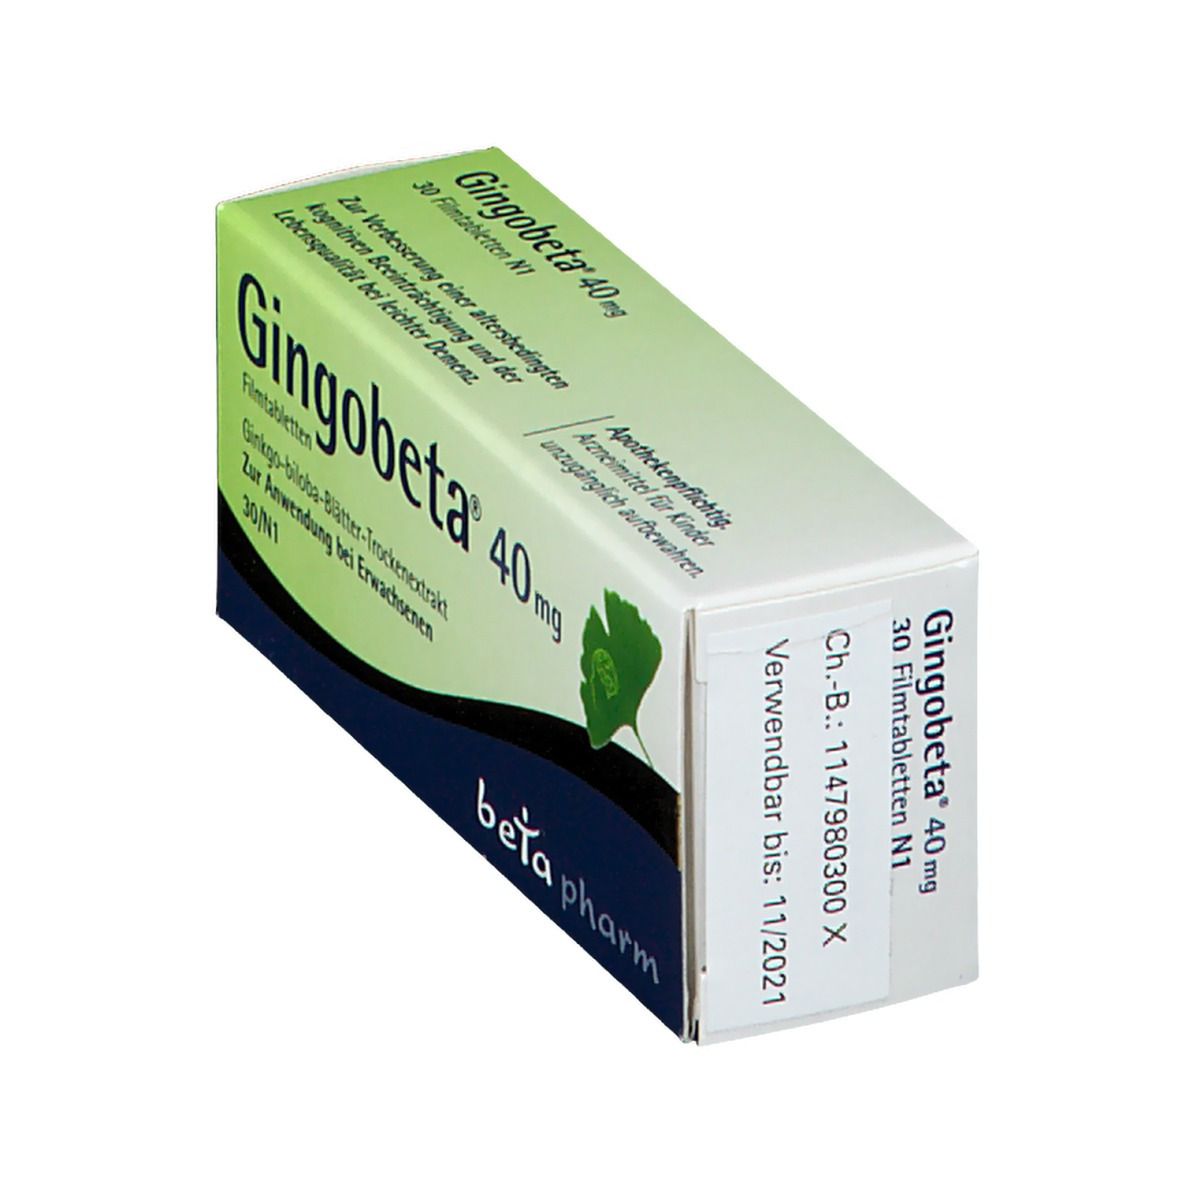 Gingobeta® 40 mg